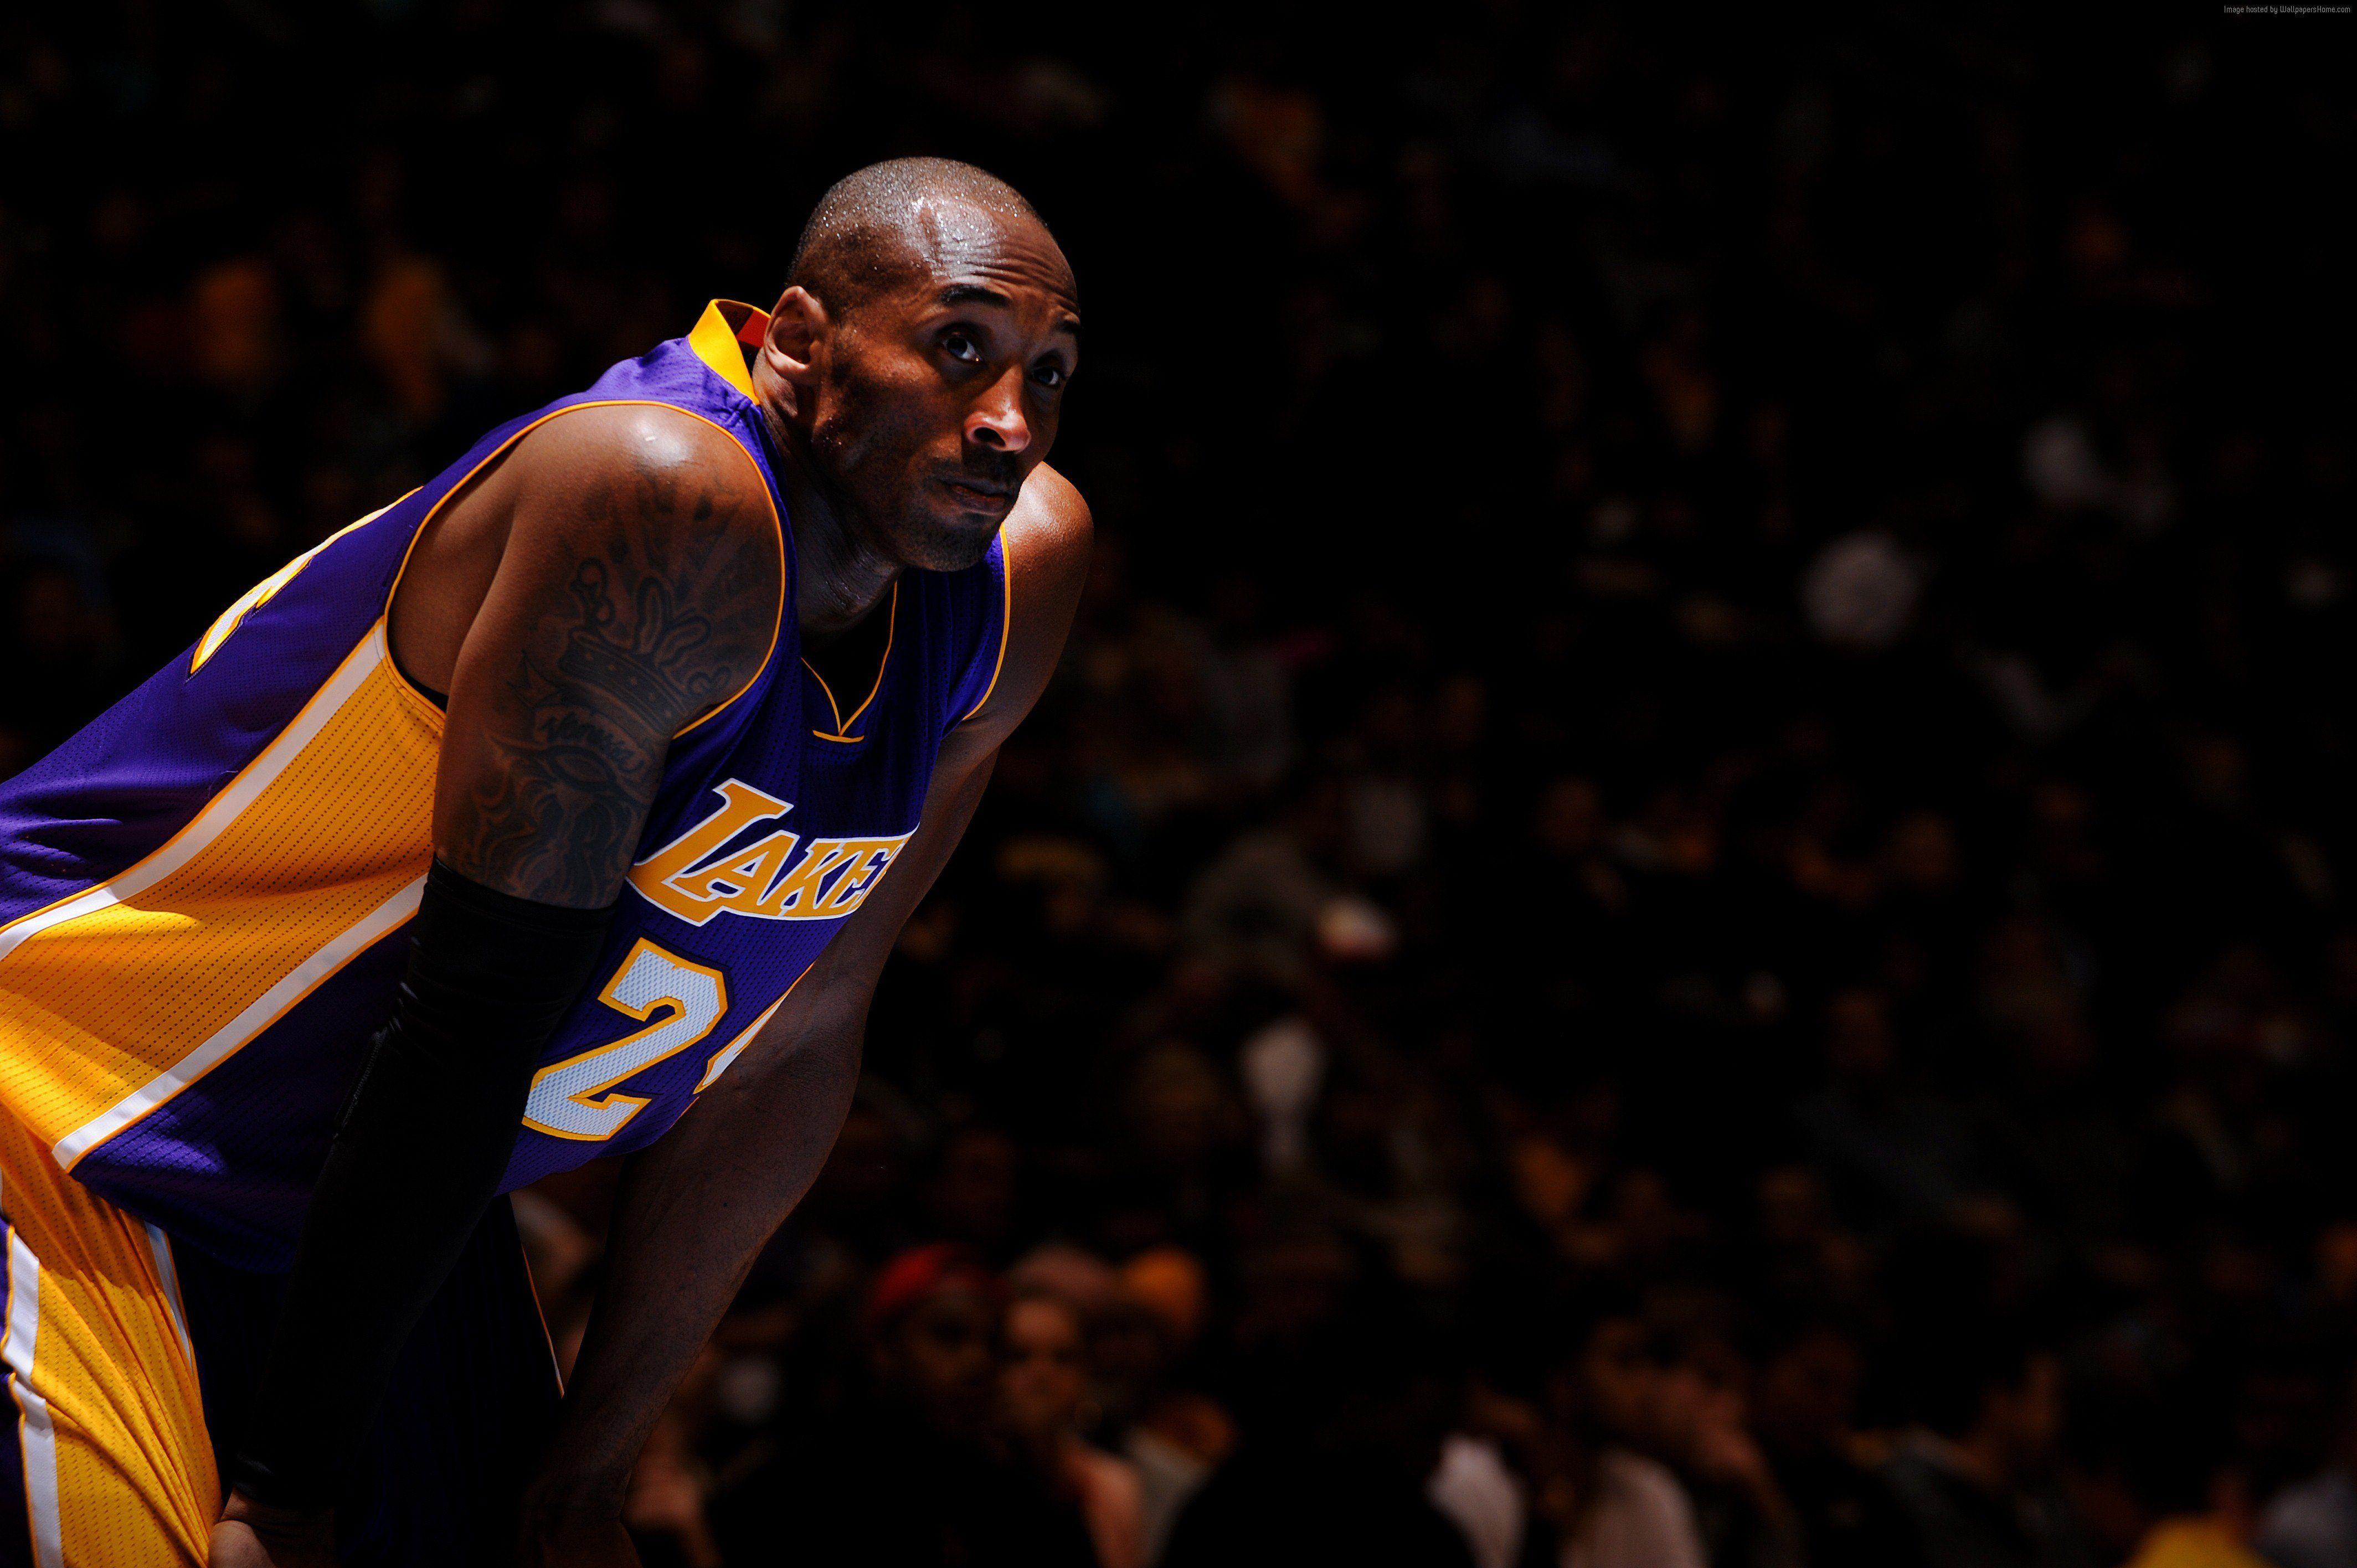 Kobe Bryant Gets Oscar Nomination for “Dear Basketball” Film